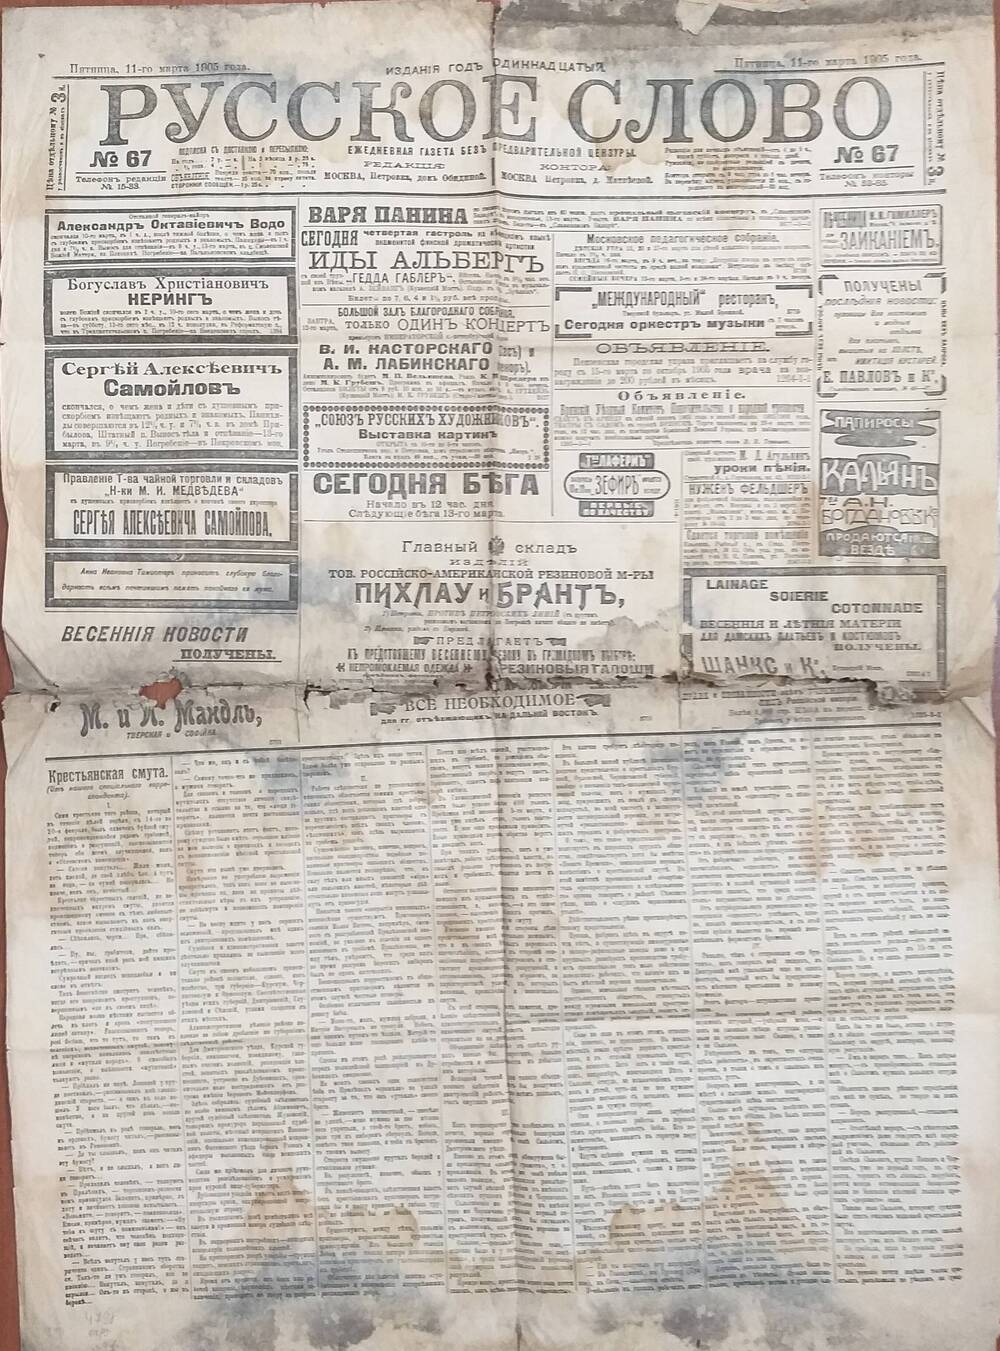 Газета Русское слово № 67 от 11.03.1905 года.